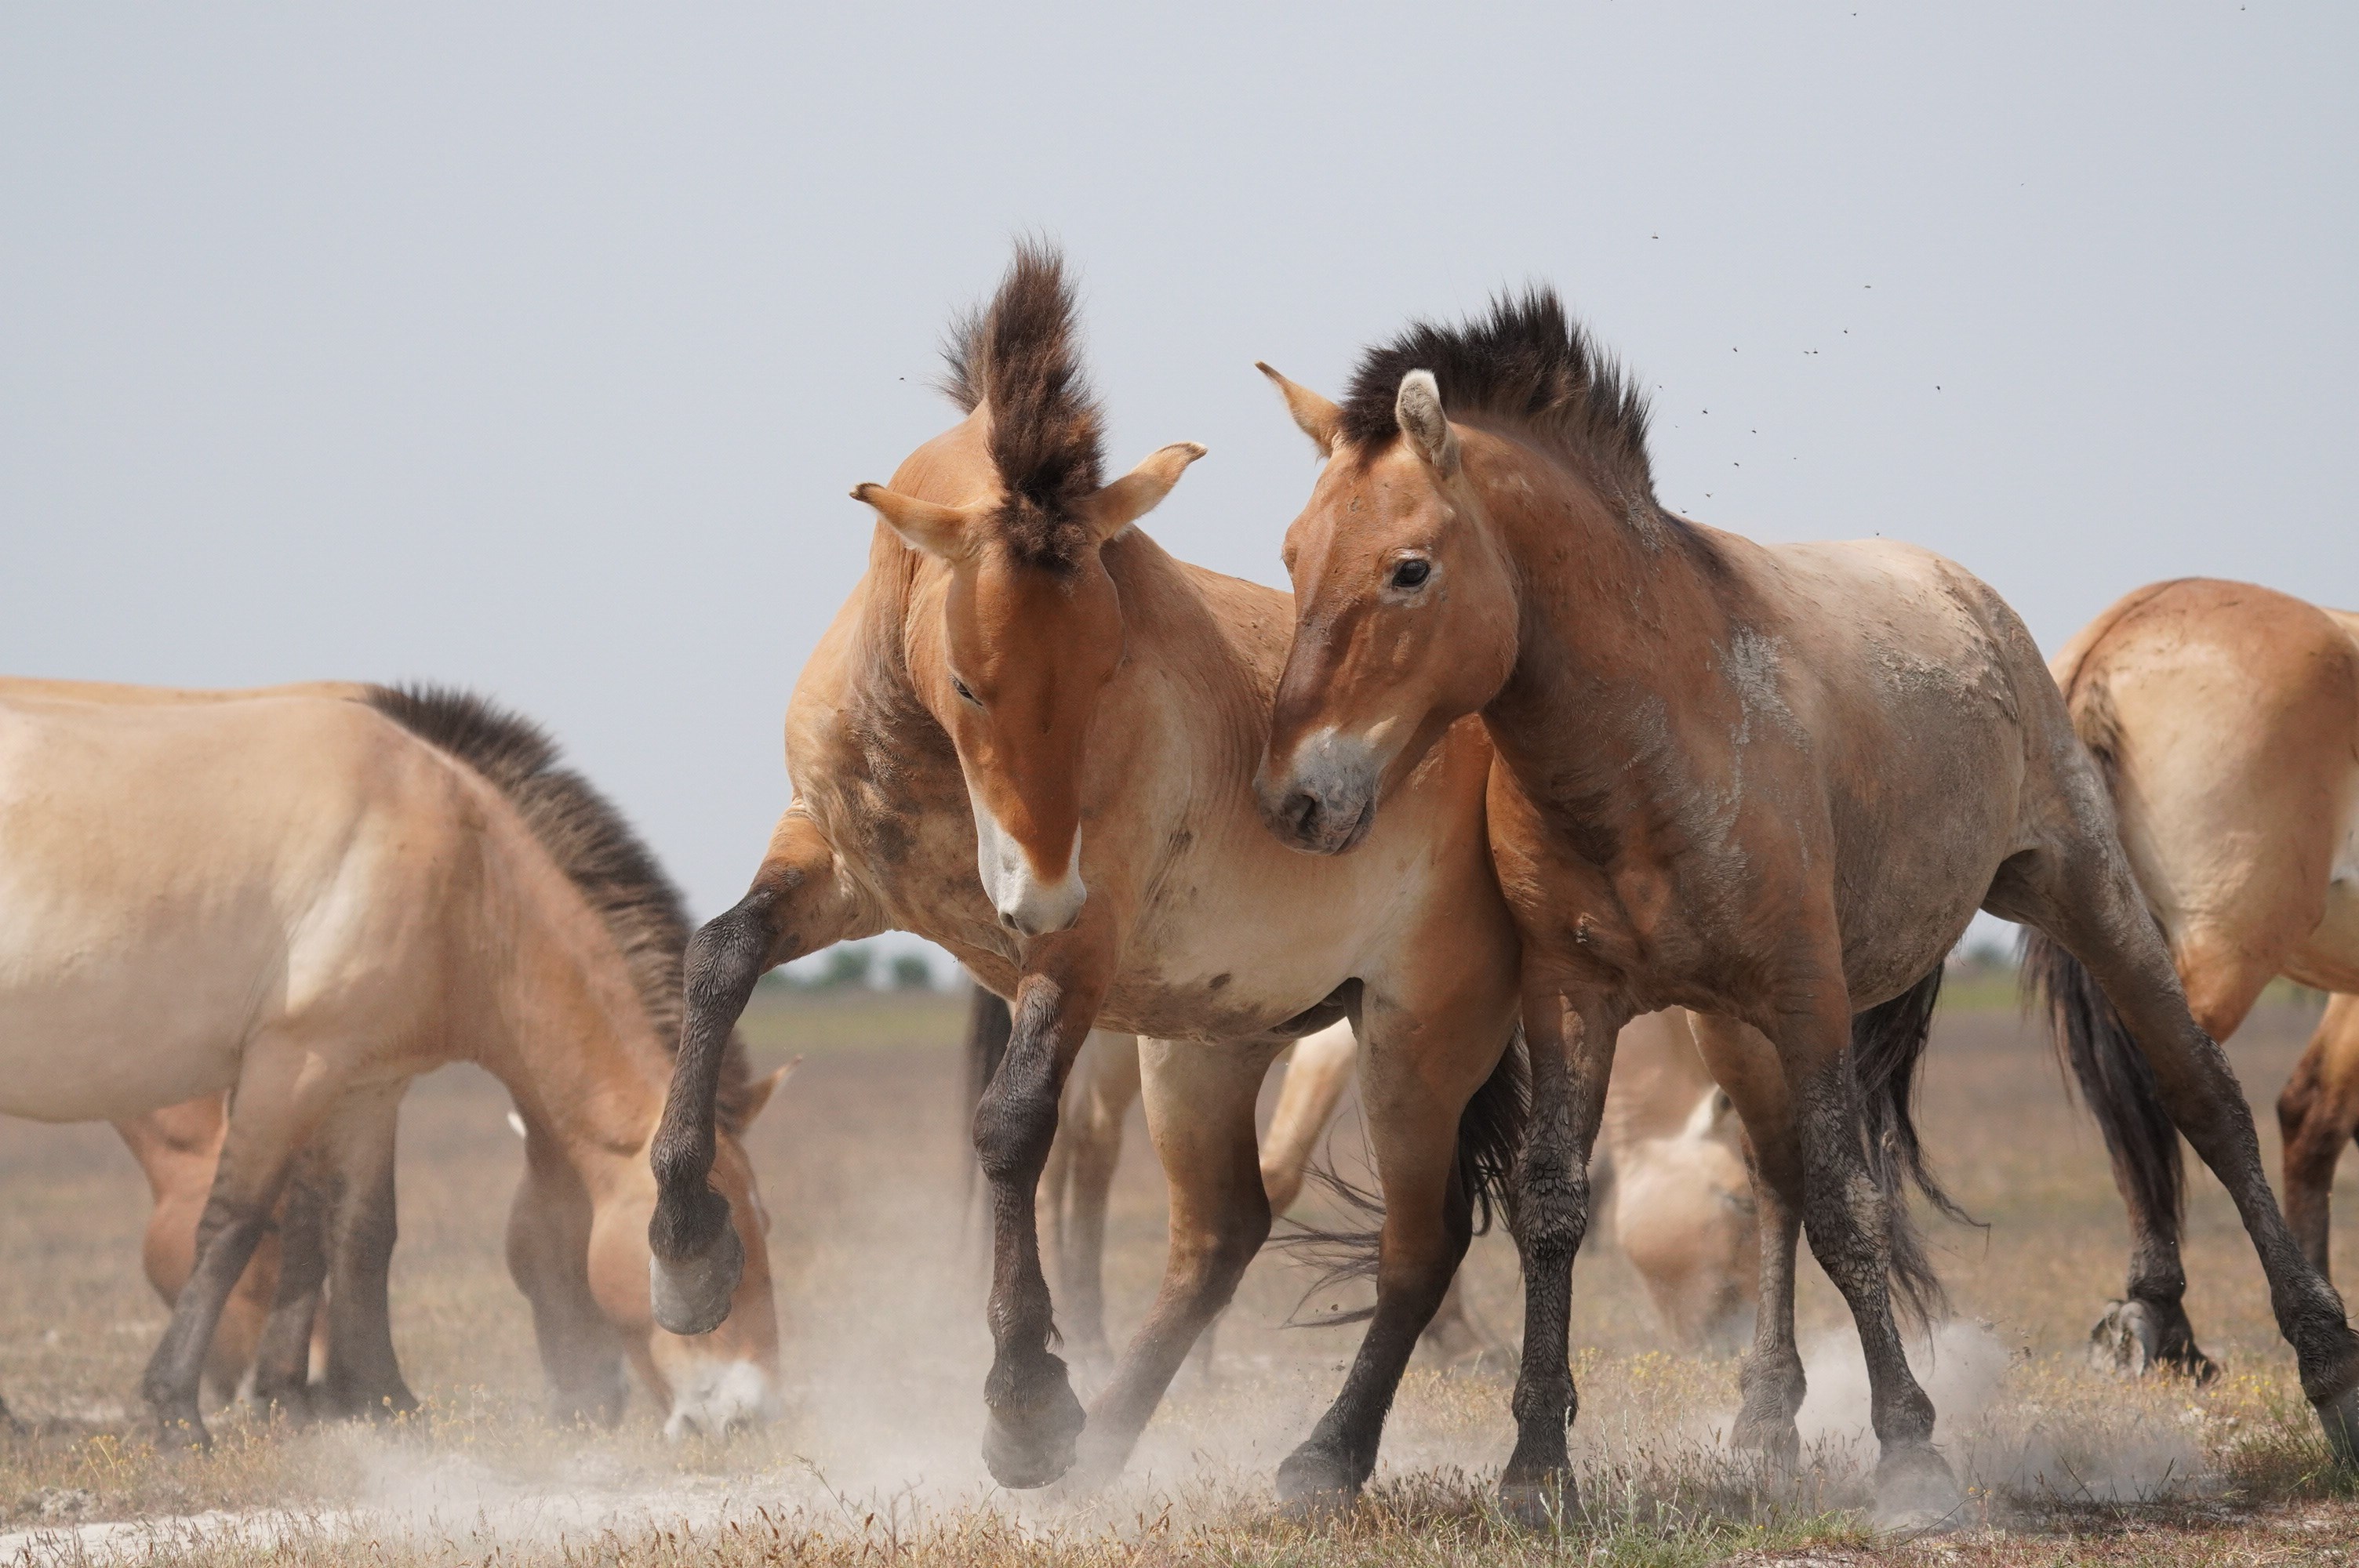 Ciencia: investigadores húngaros han utilizado drones para estudiar la compleja sociedad de los caballos salvajes